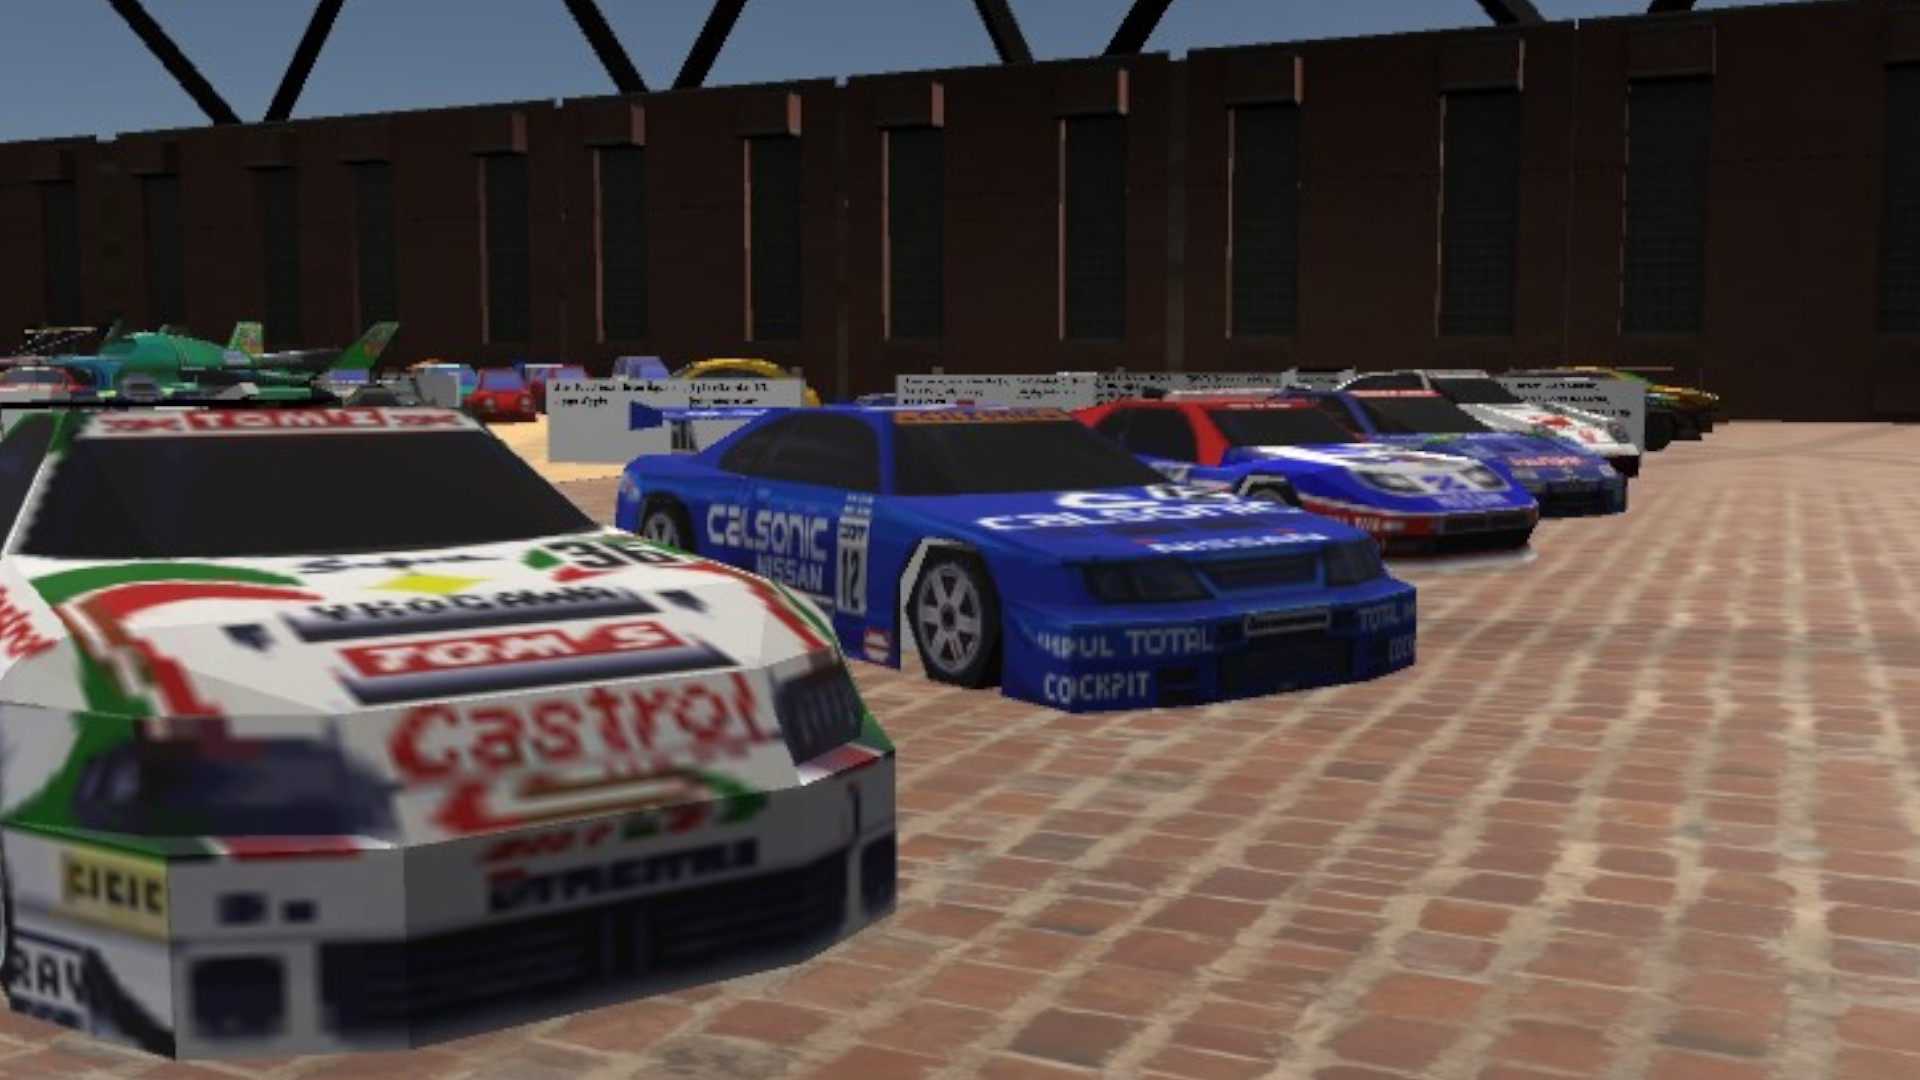 متحف السيارات 64 هو متحف افتراضي للسيارات من ألعاب نينتندو 64 29